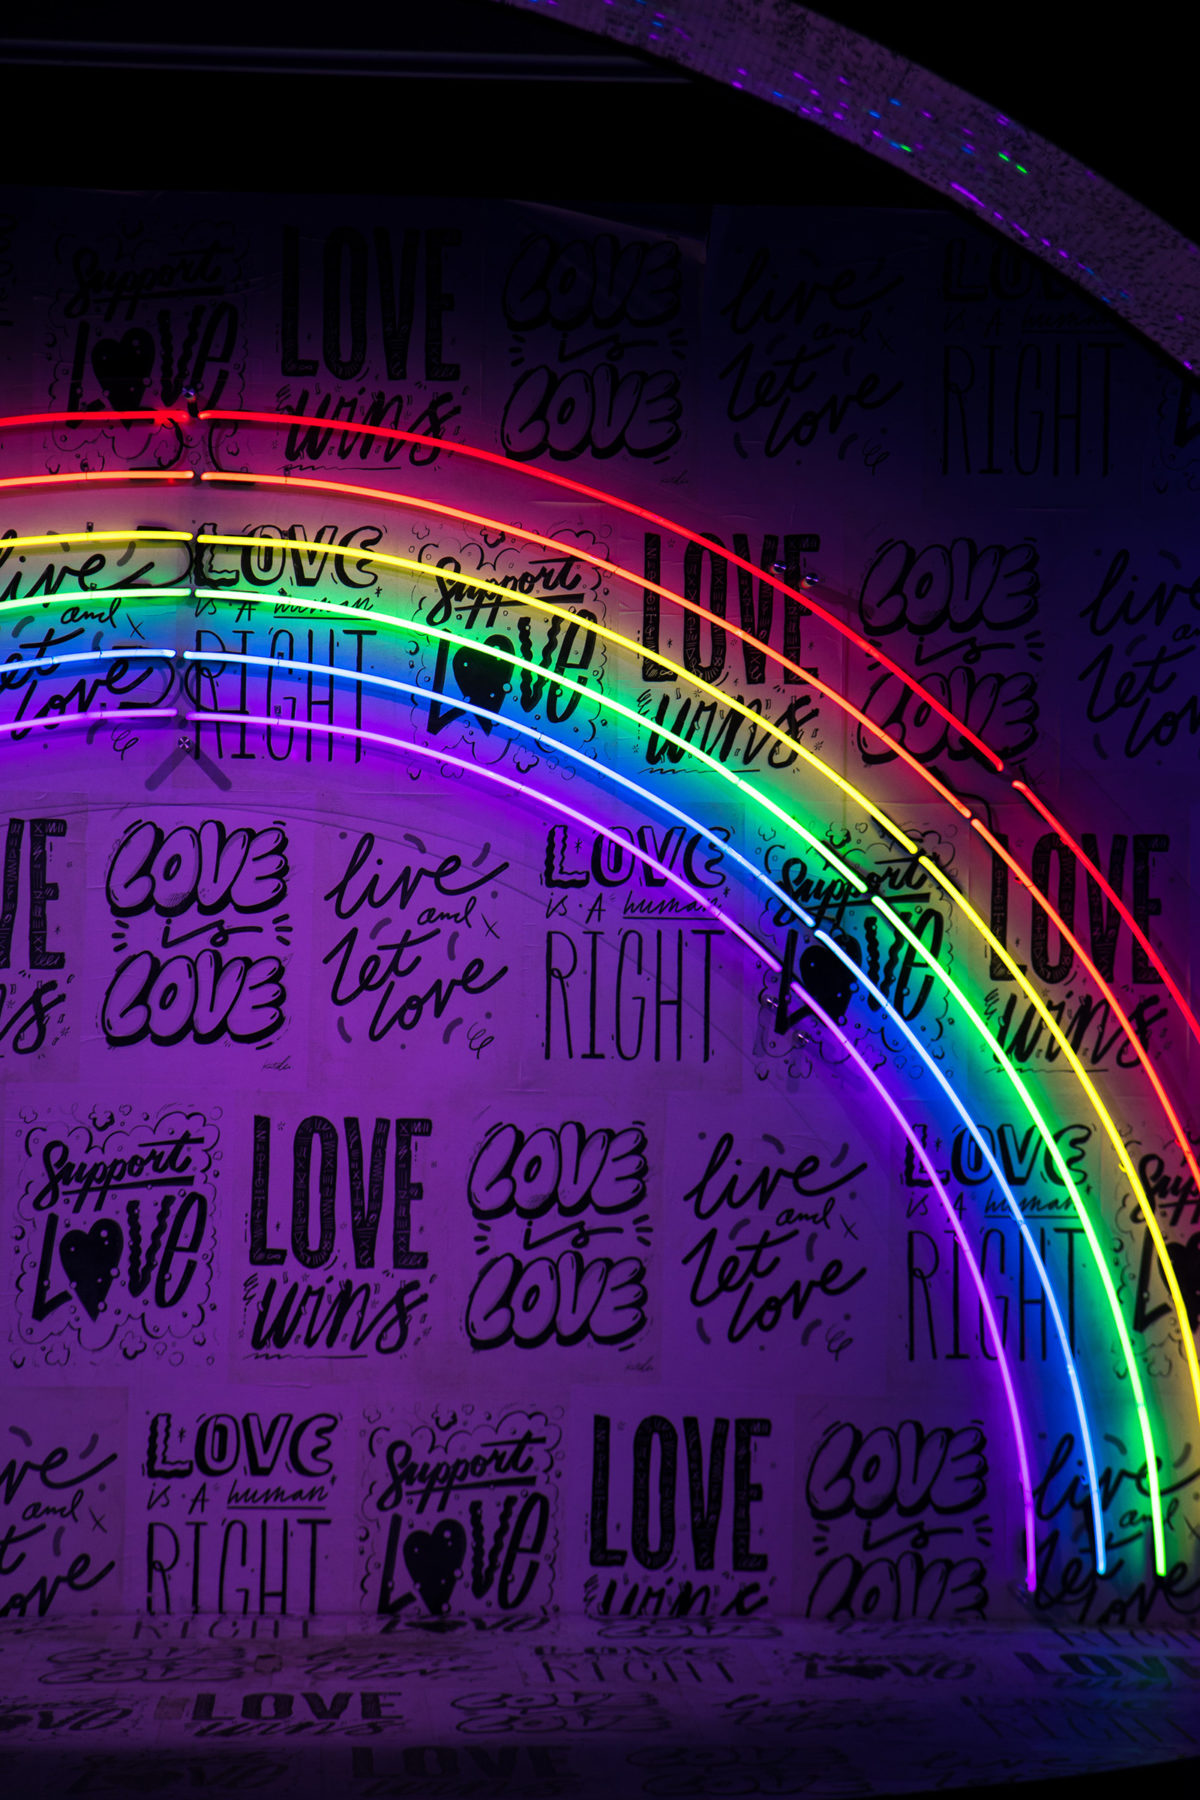 LGBTQ+ rainbow